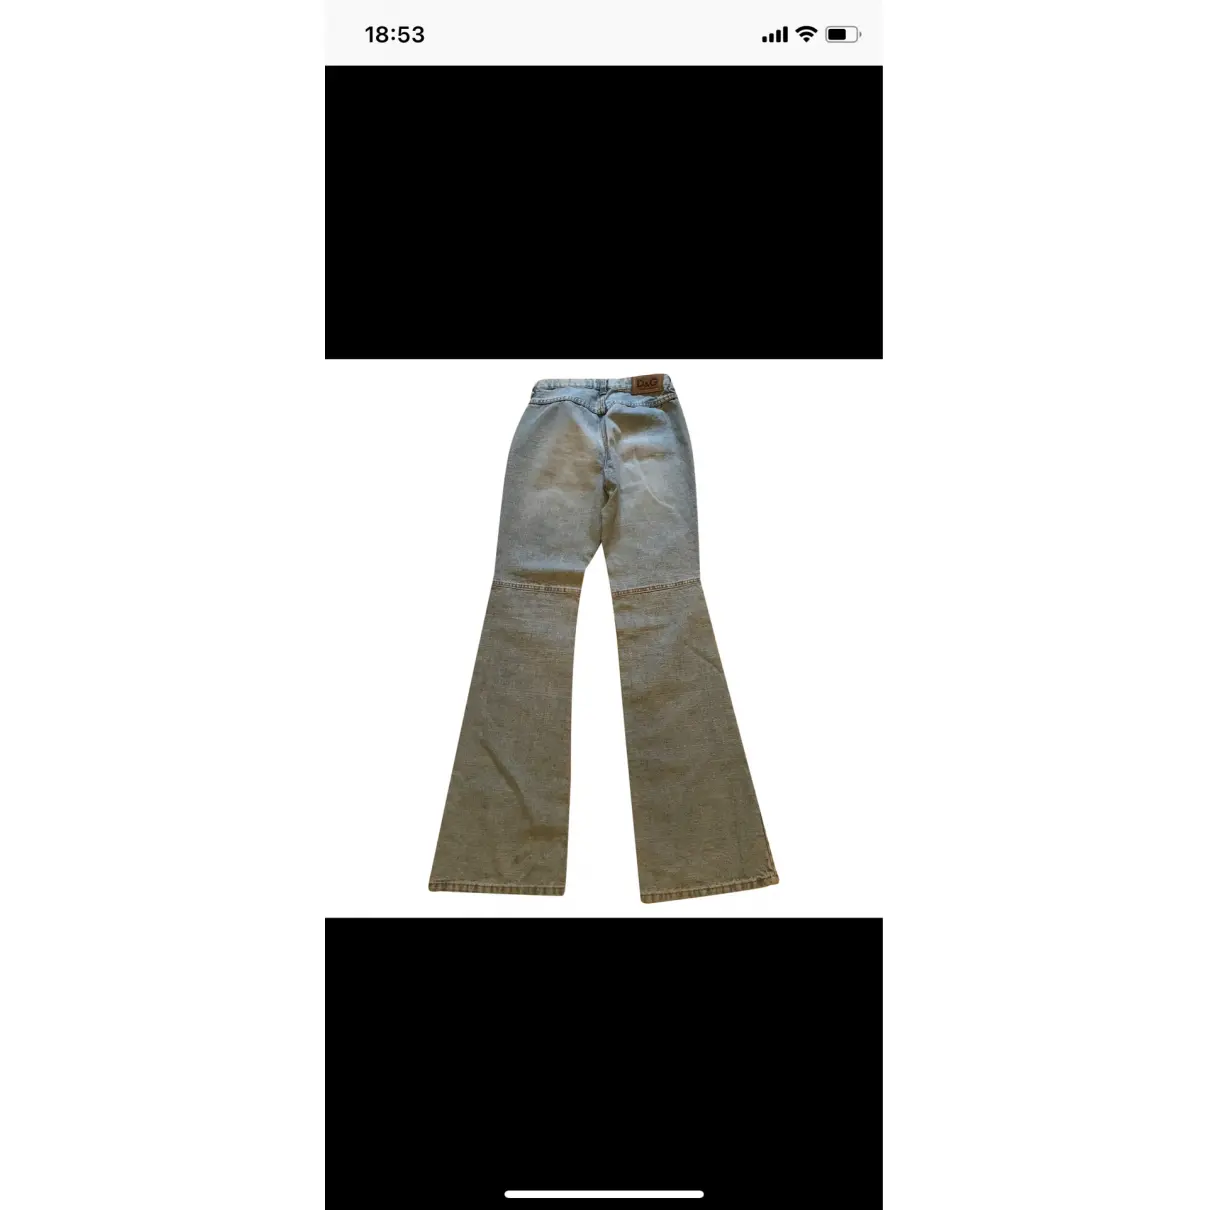 Jeans D&G